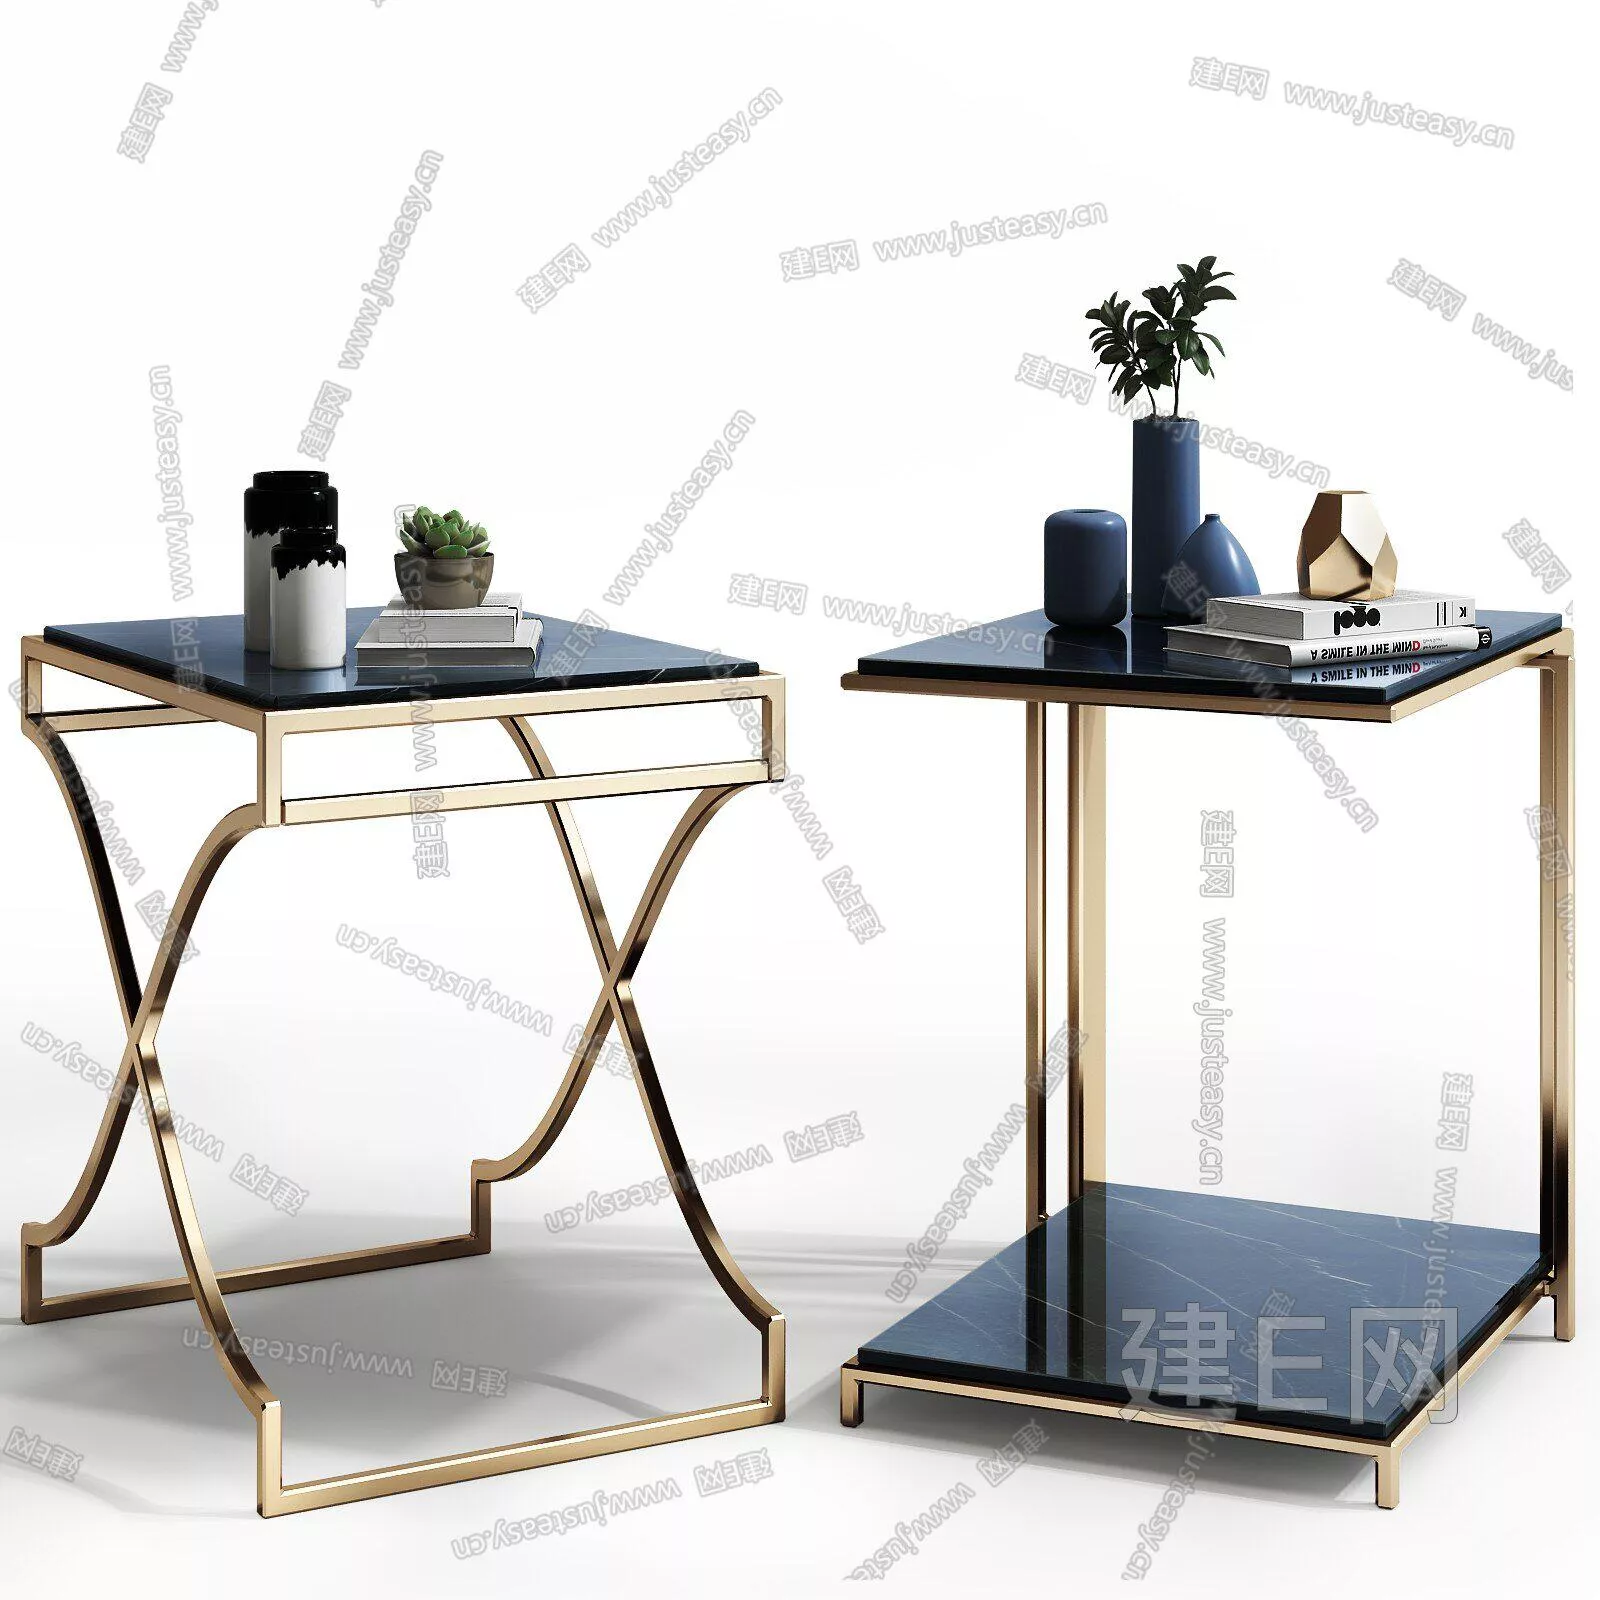 MODERN SIDE TABLE - SKETCHUP 3D MODEL - ENSCAPE - 110644559